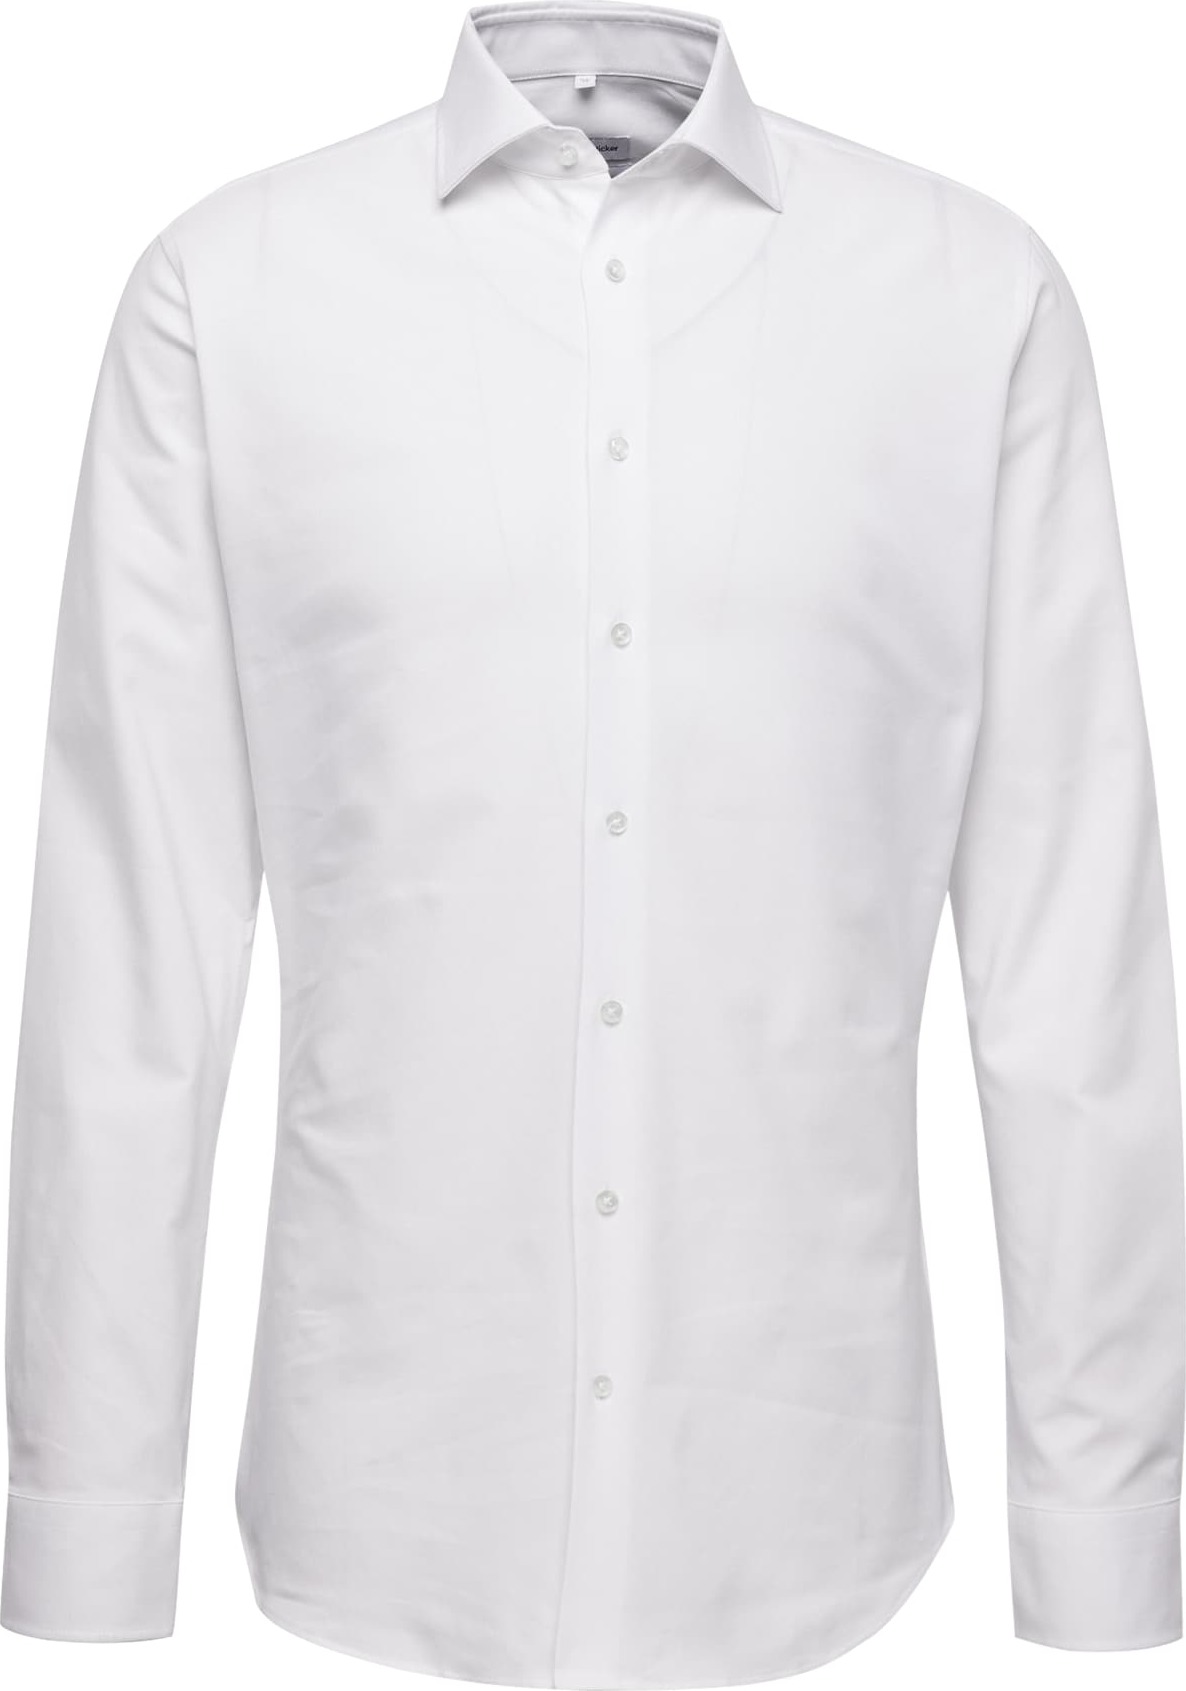 Společenská košile seidensticker bílá